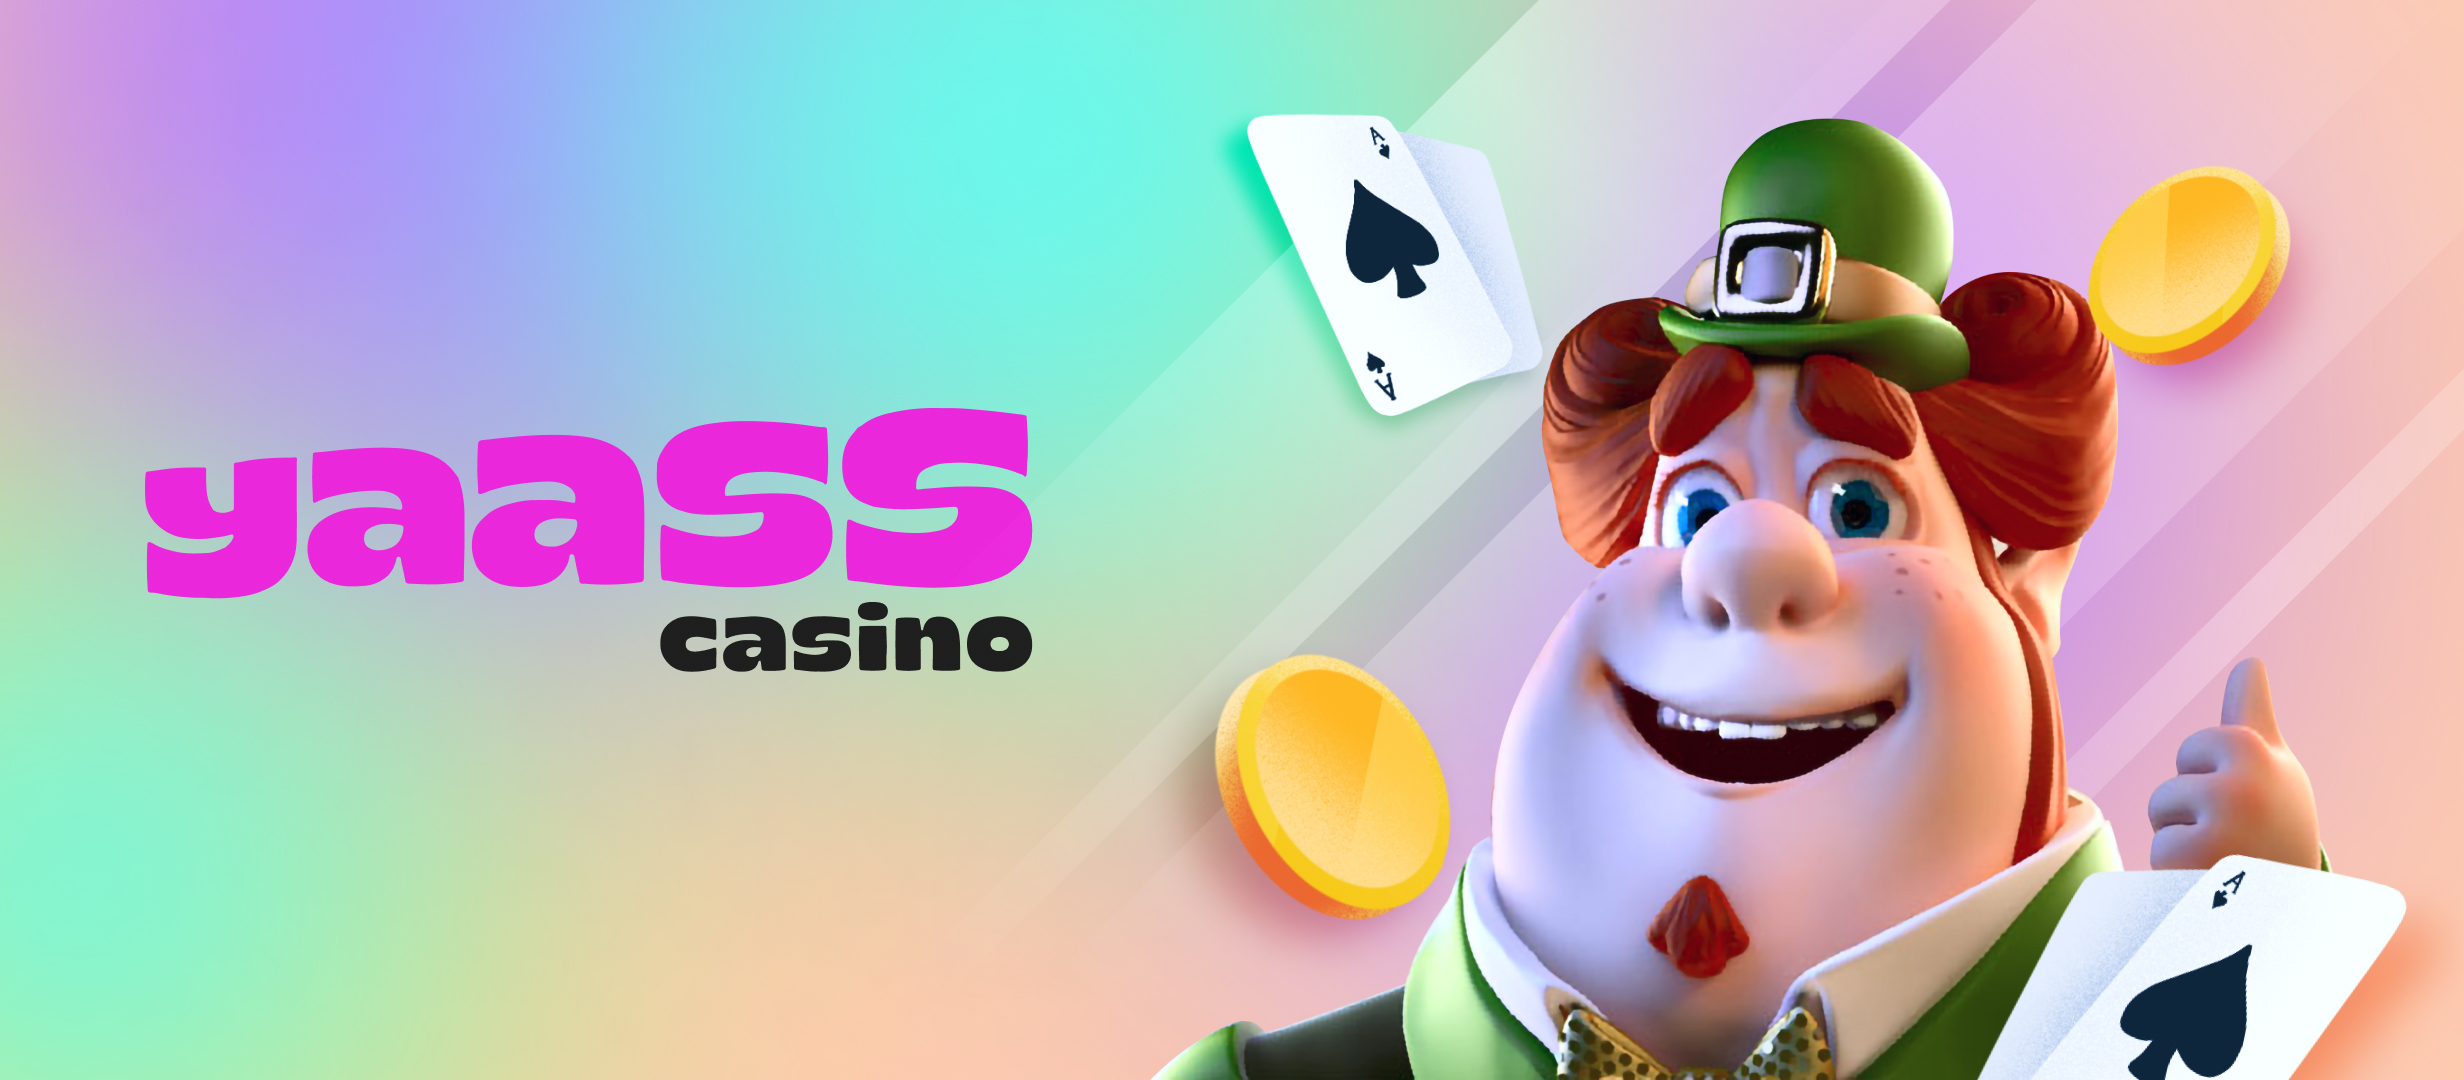 ¡YAASS Casino ya está aquí!